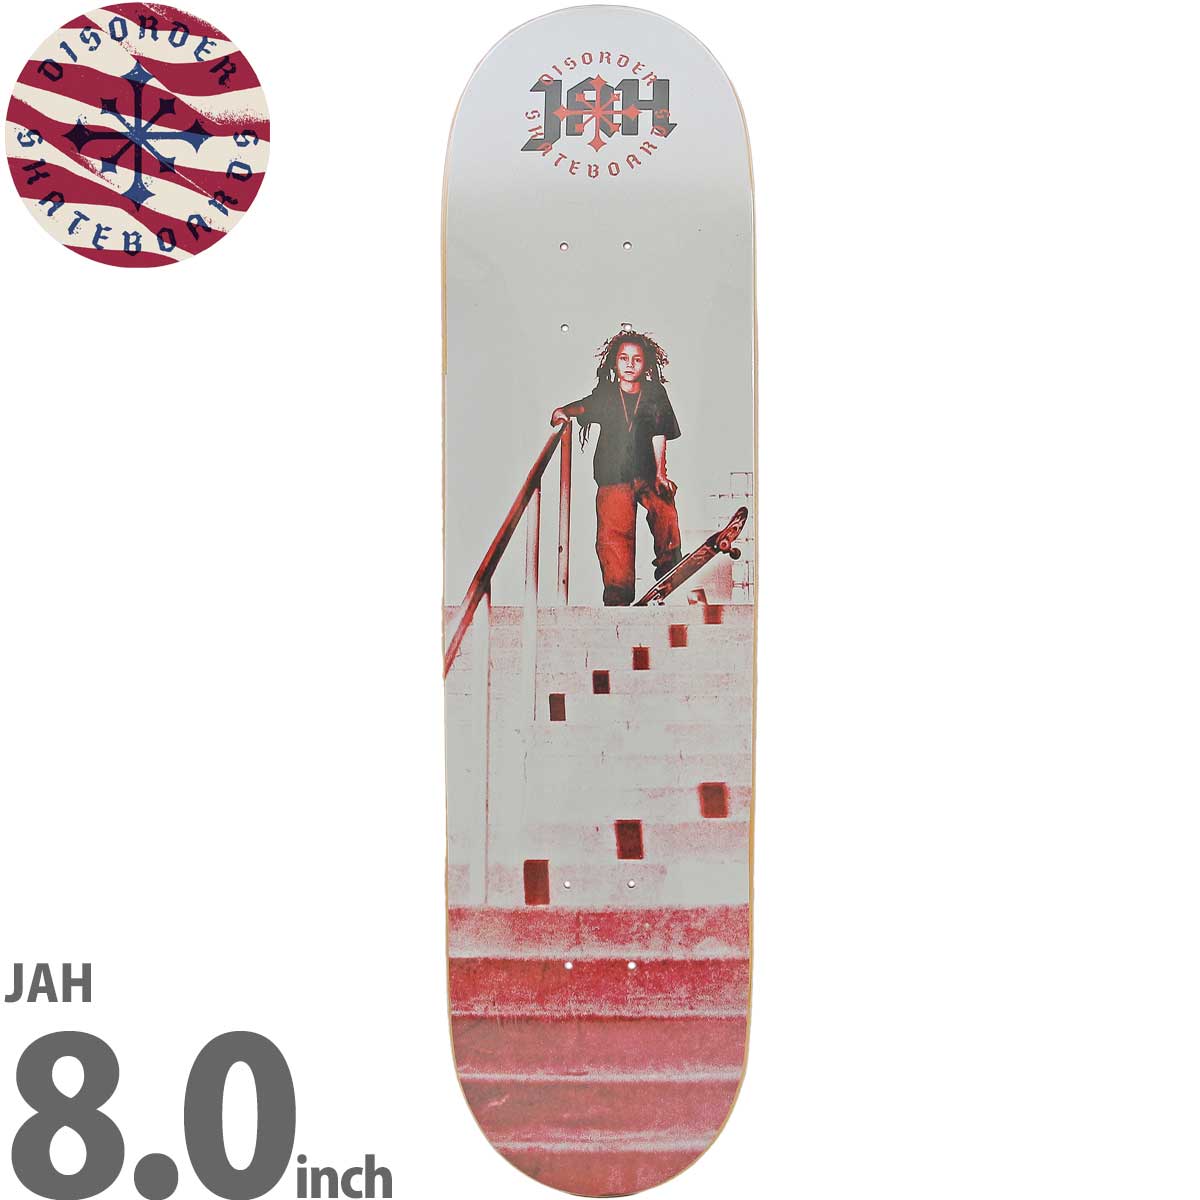 ディスオーダー 8.0インチ スケボー デッキ Disorder Skateboards JAH Deck スケートボード 人気 おすすめ ブランド  Nyjah Huston ナイジャ スケボーデッキ